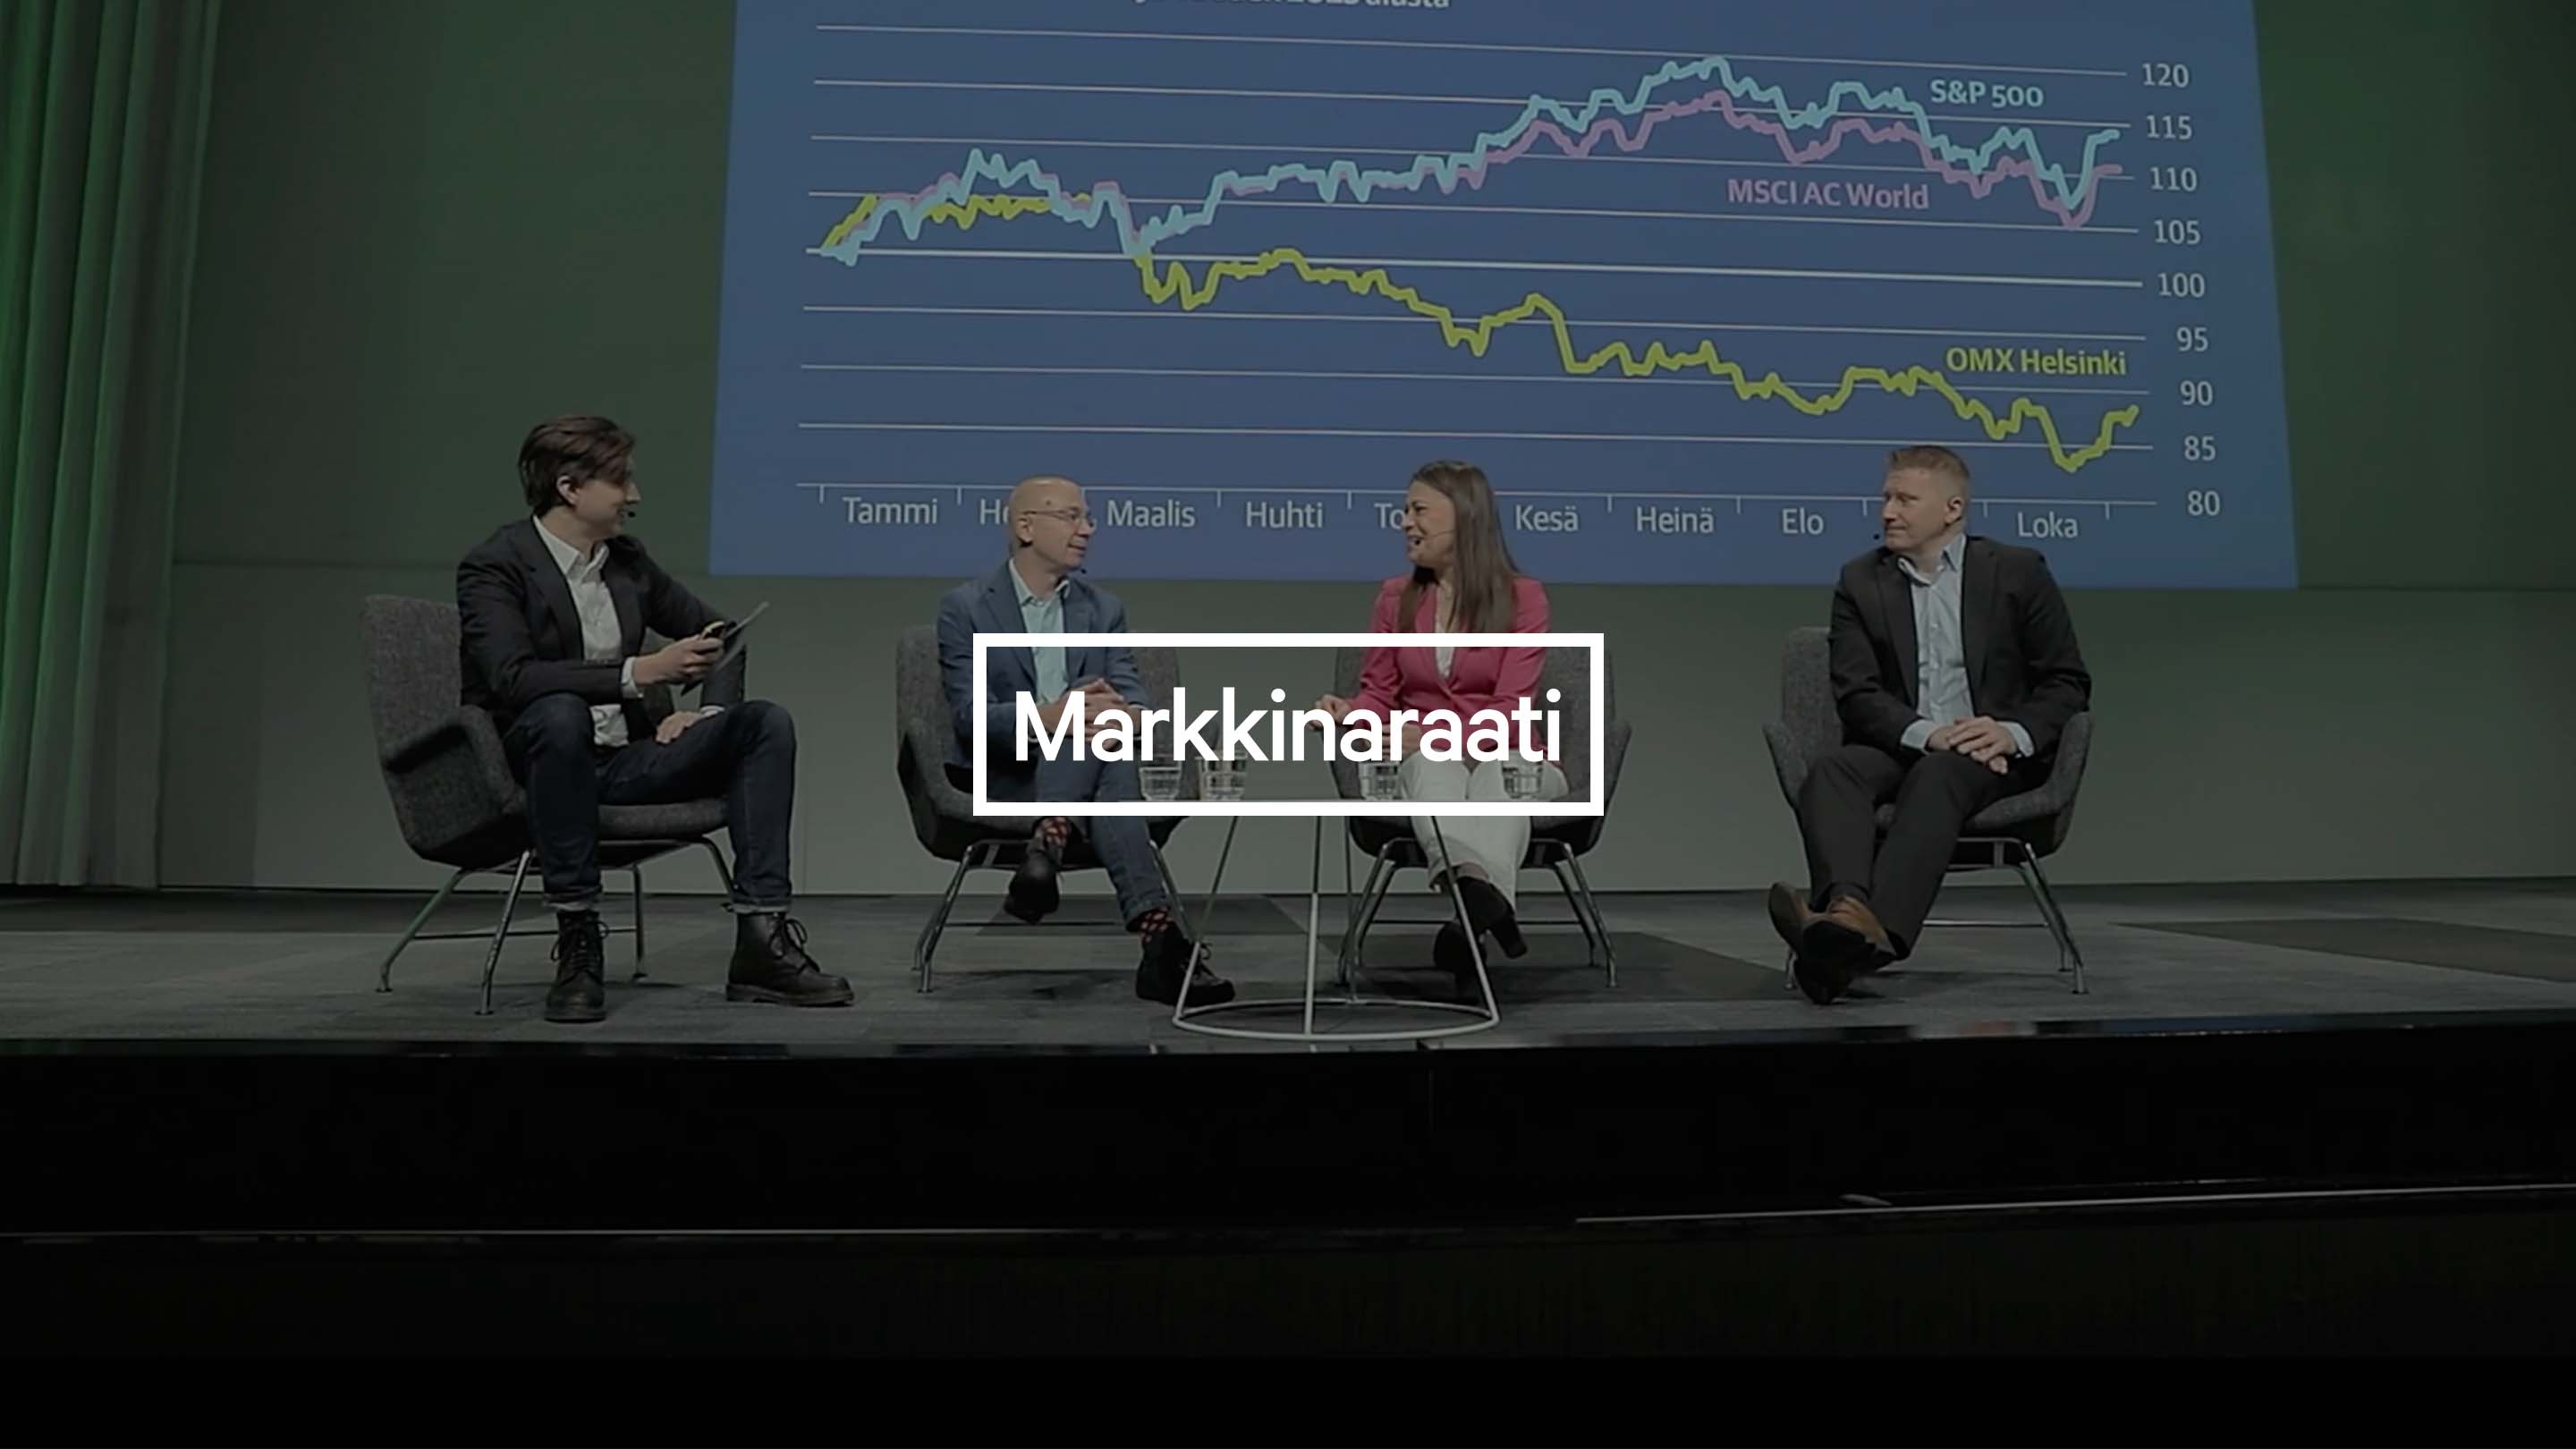 Markkinaraati: Antalet aktieplacerare i Finland har ökat